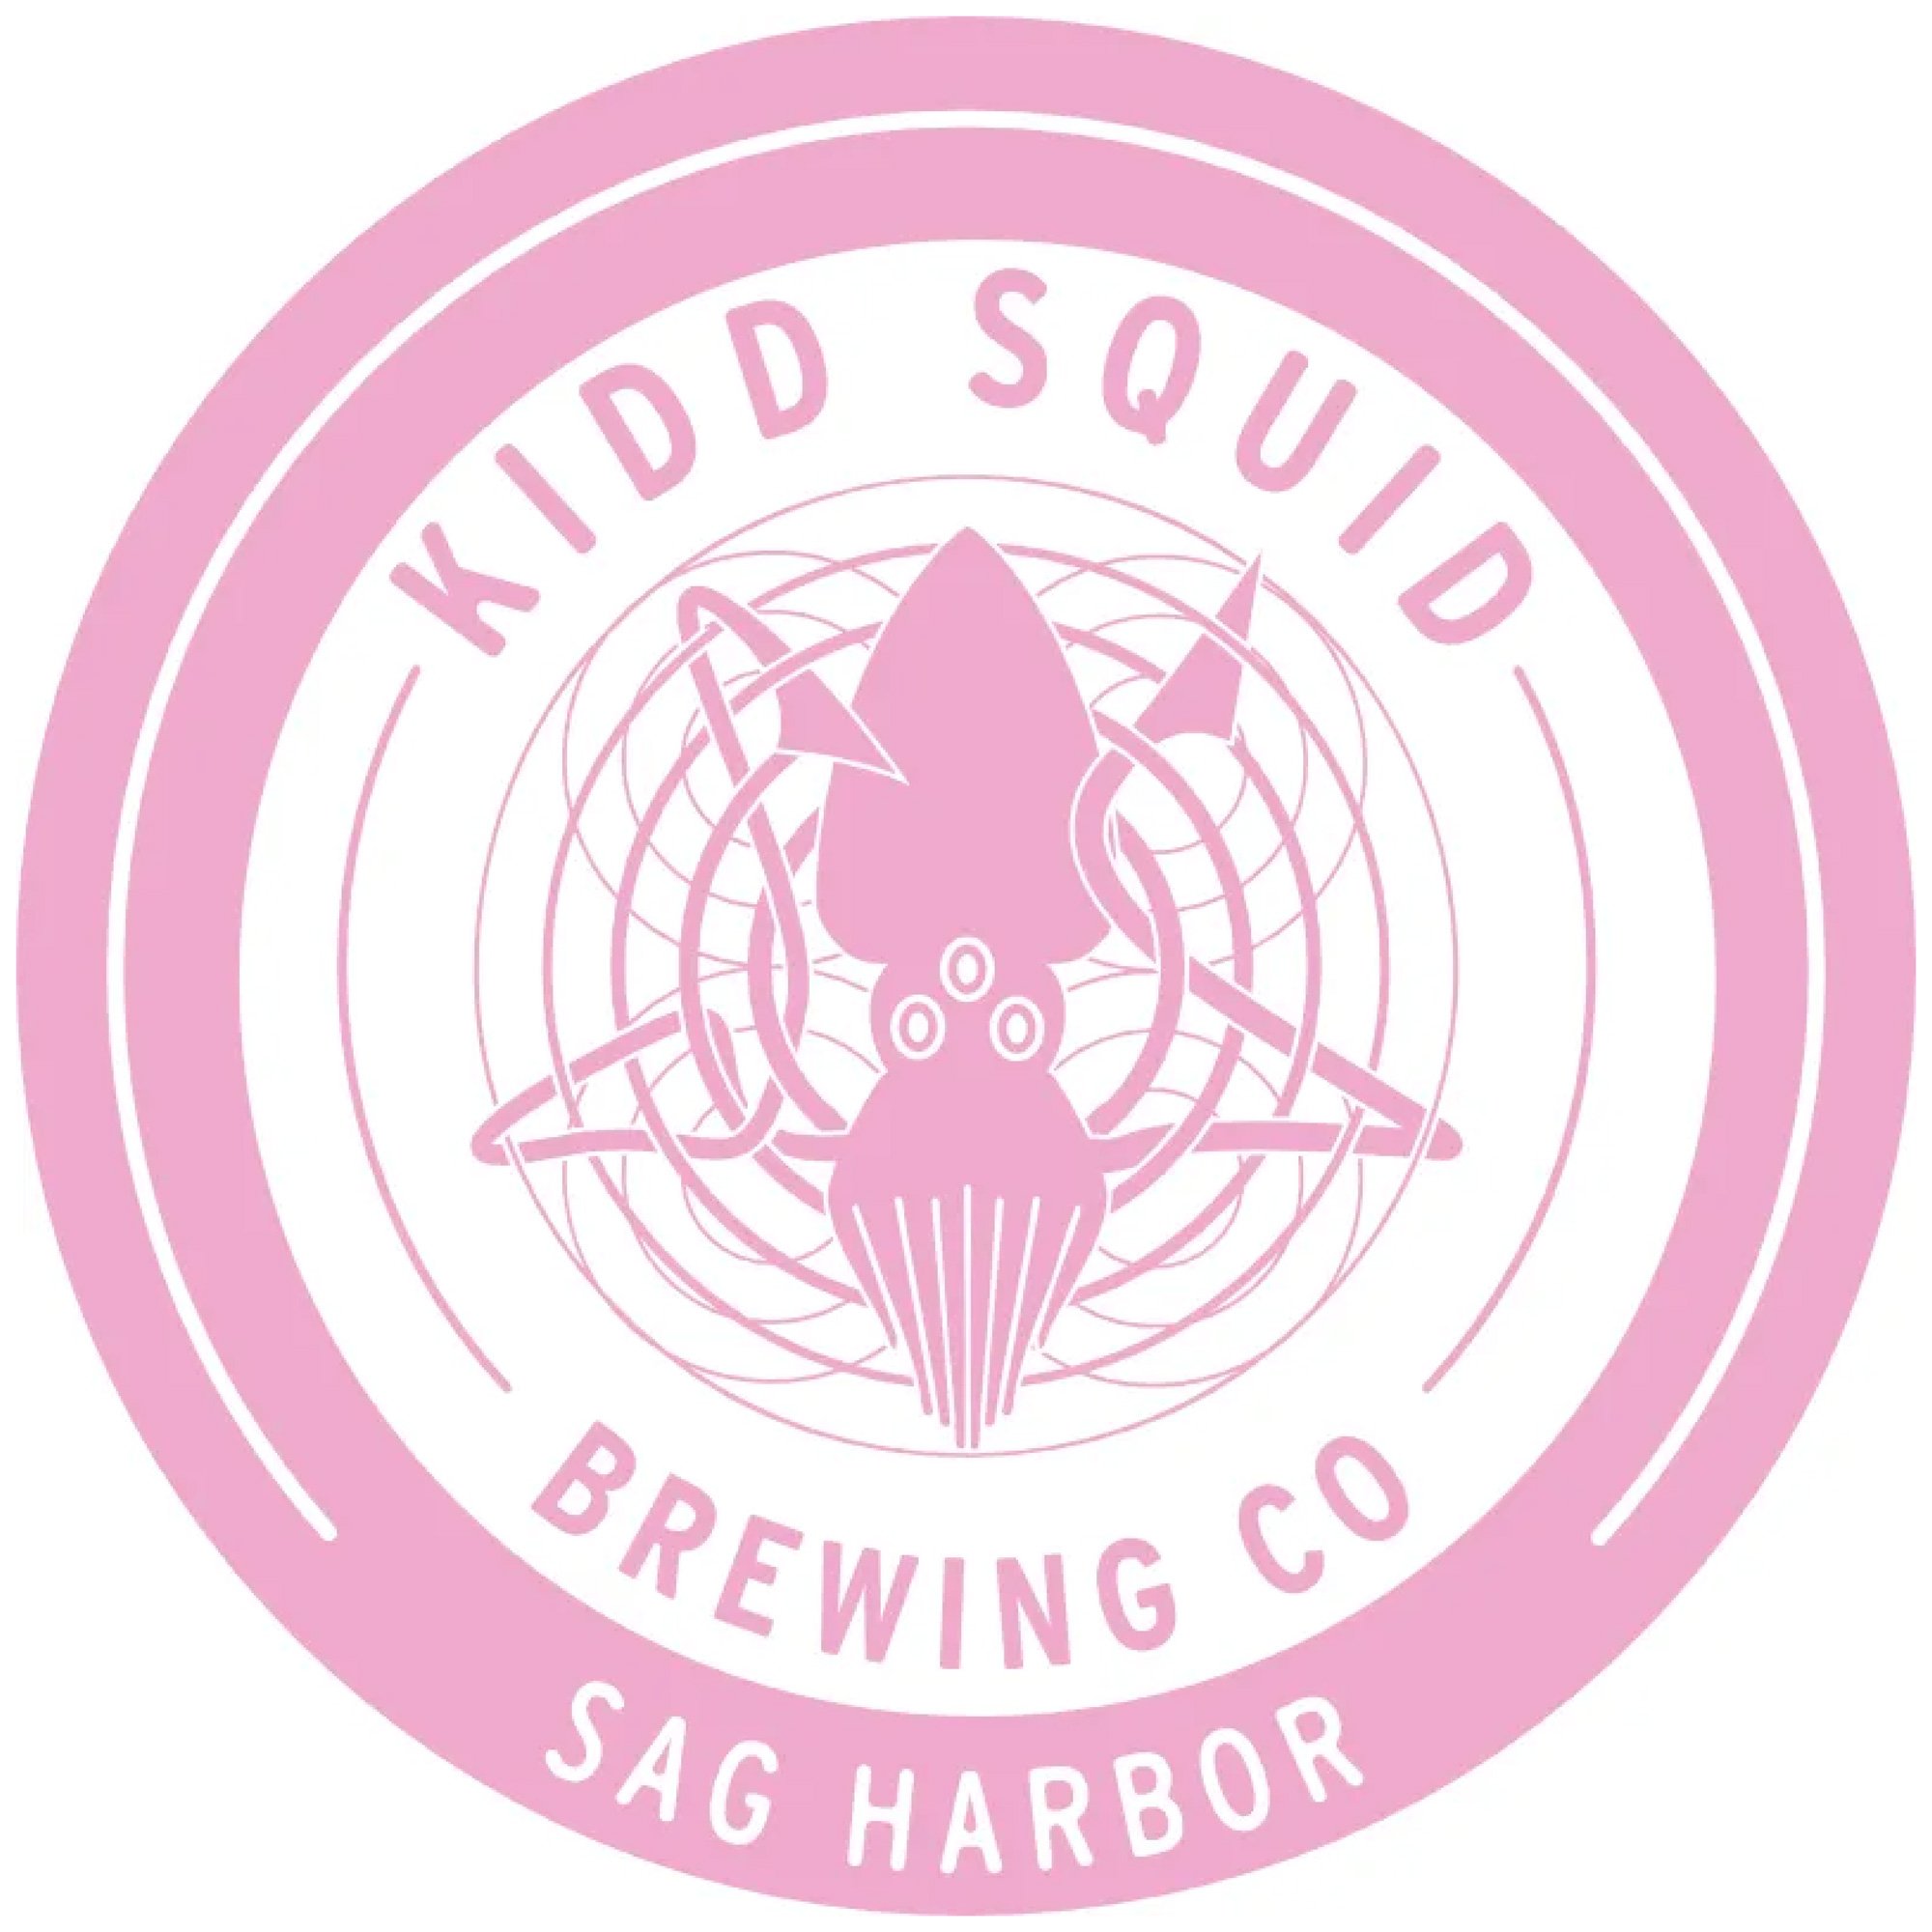 kiddsquid-logo-a.jpg